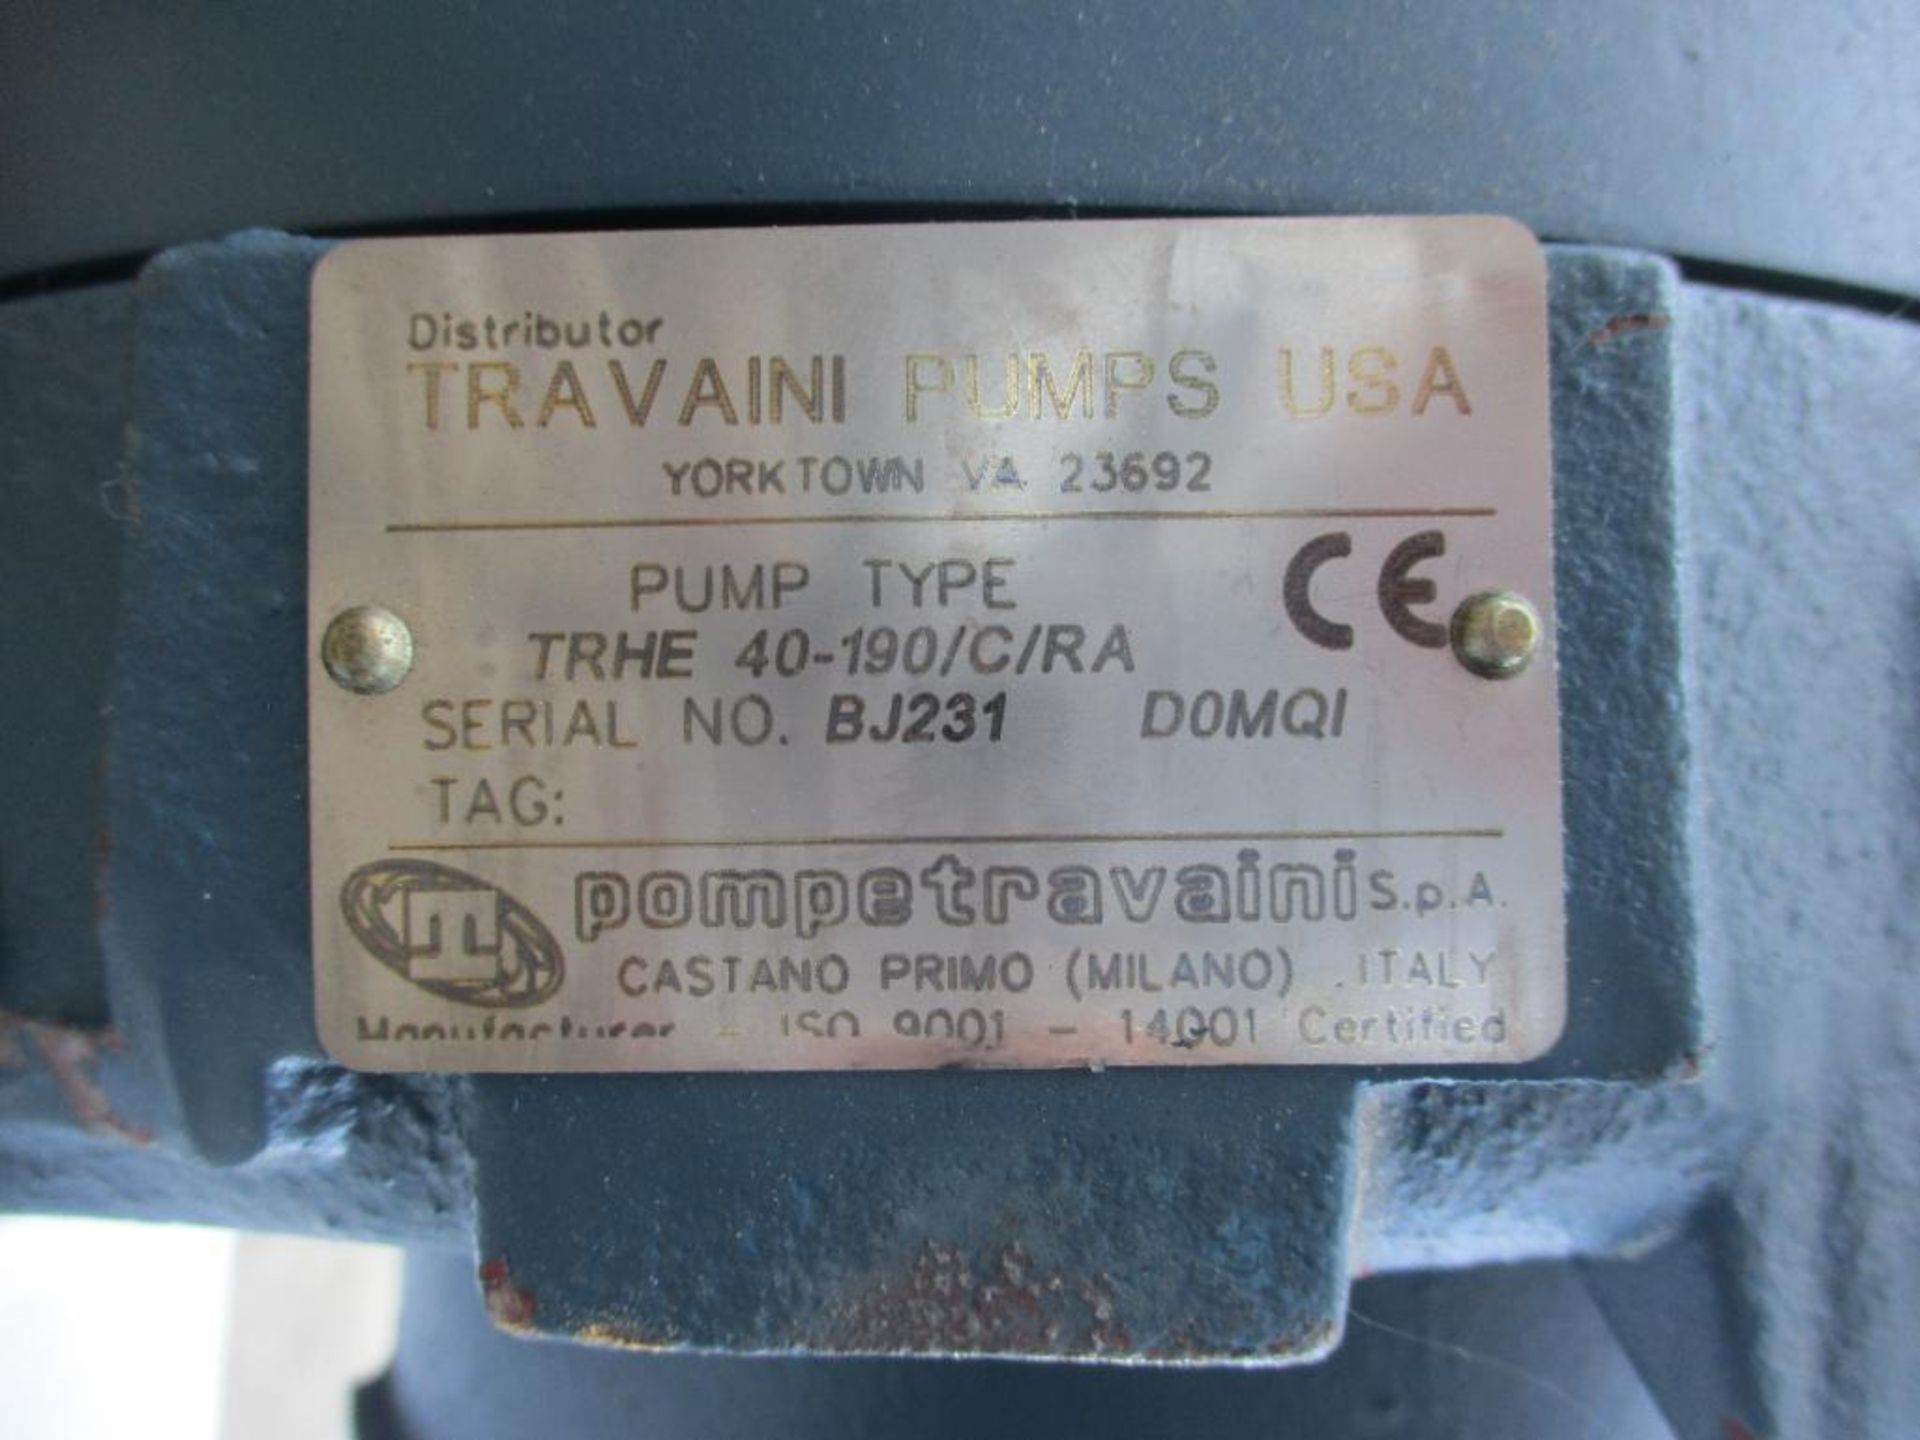 TRAVANI VACUUM PUMP M53254 1800RPM 10HP MOTOR TRHE 40-190/C/RA - Image 6 of 6